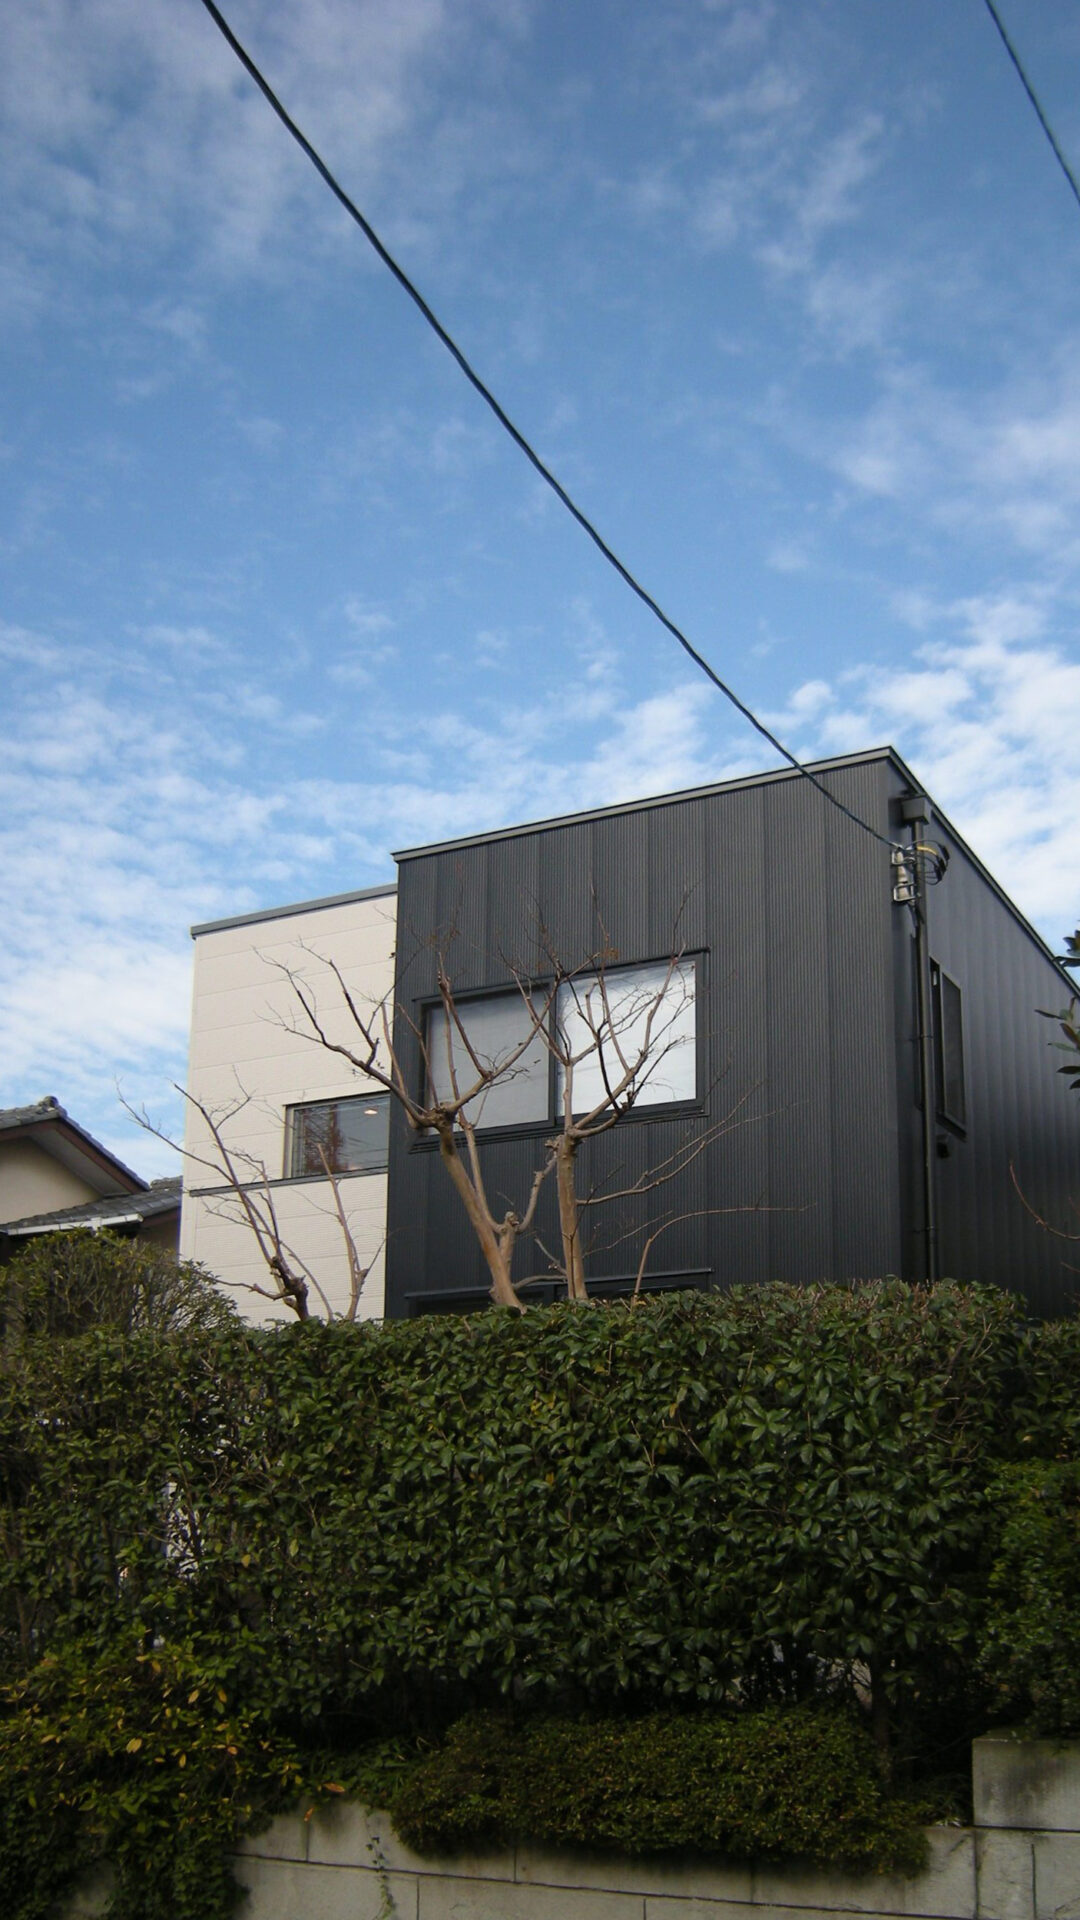 川崎の家